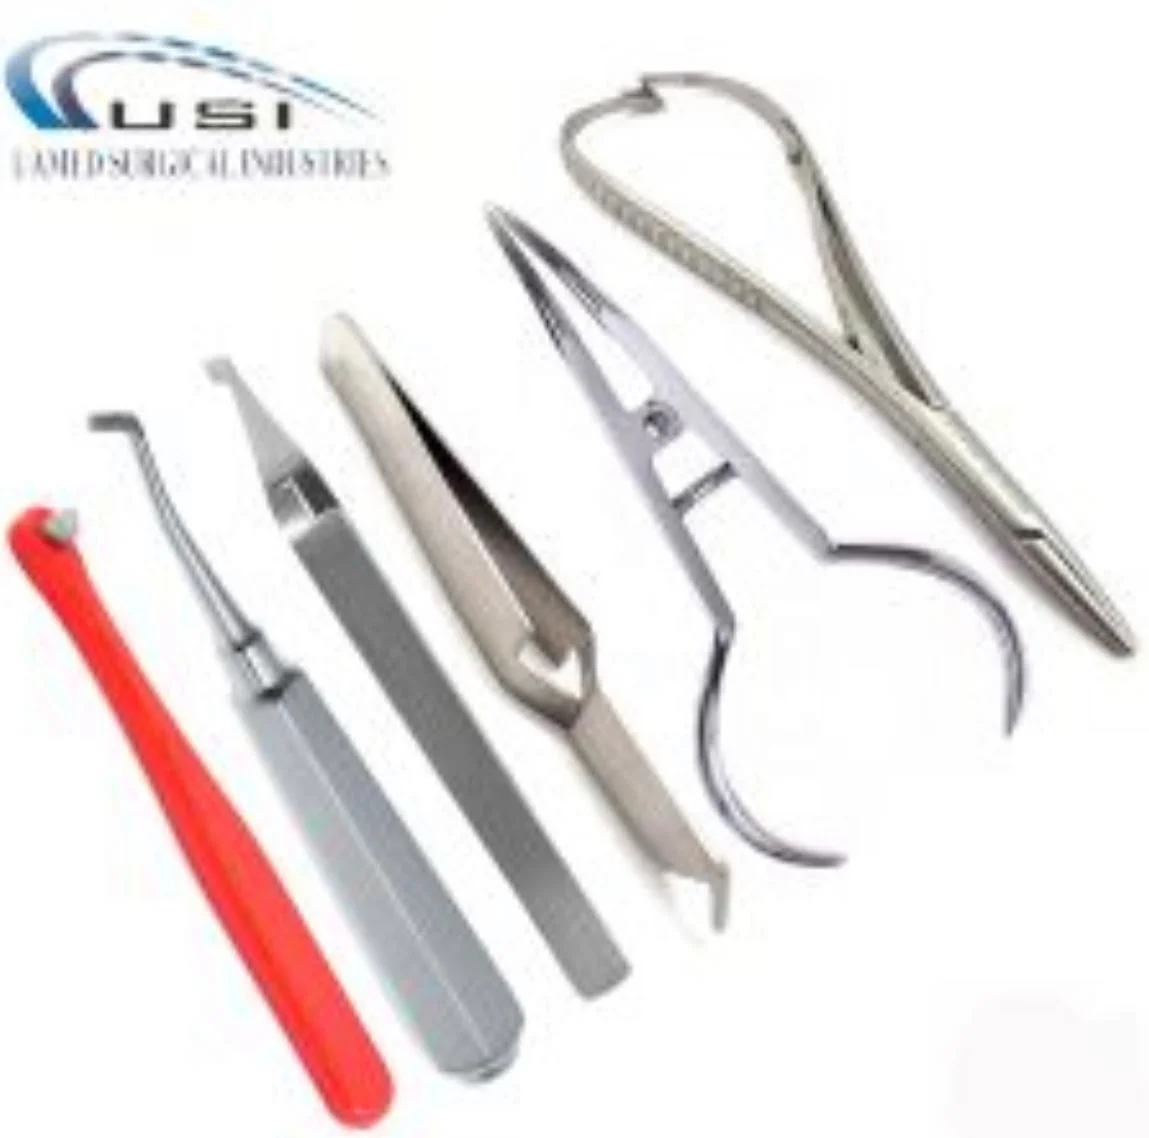 Miroir dentaire en acier inoxydable,outils de dentiste,Kit d'instruments de  chirurgie dentaire,pincettes,sonde- 5pcs[F97498]